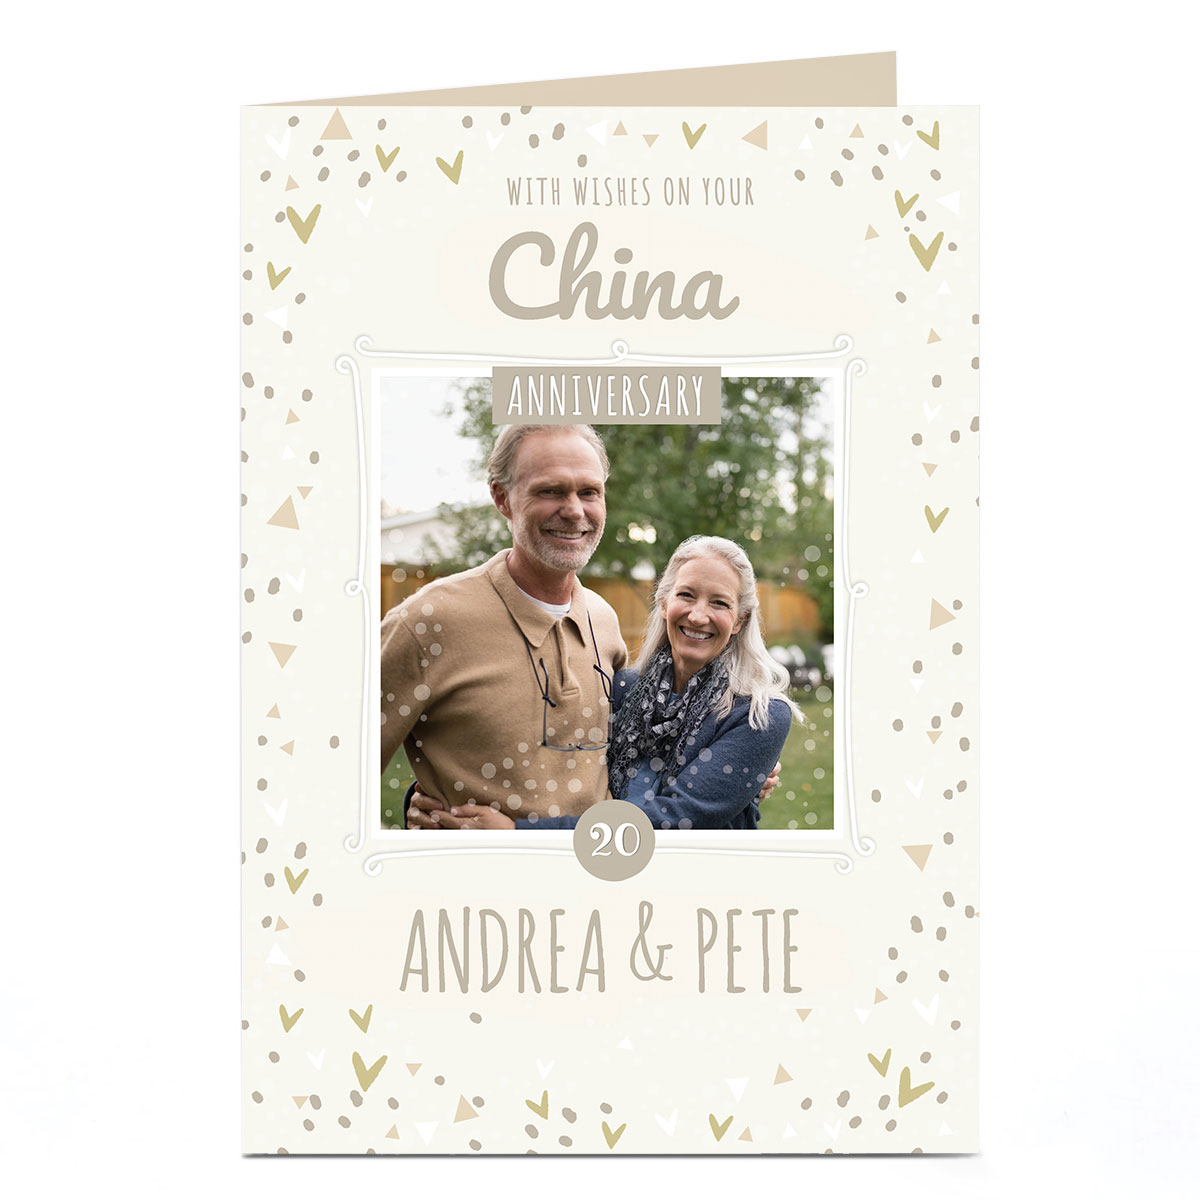 Personalised Anniversary Photo Card - China Anniversary 